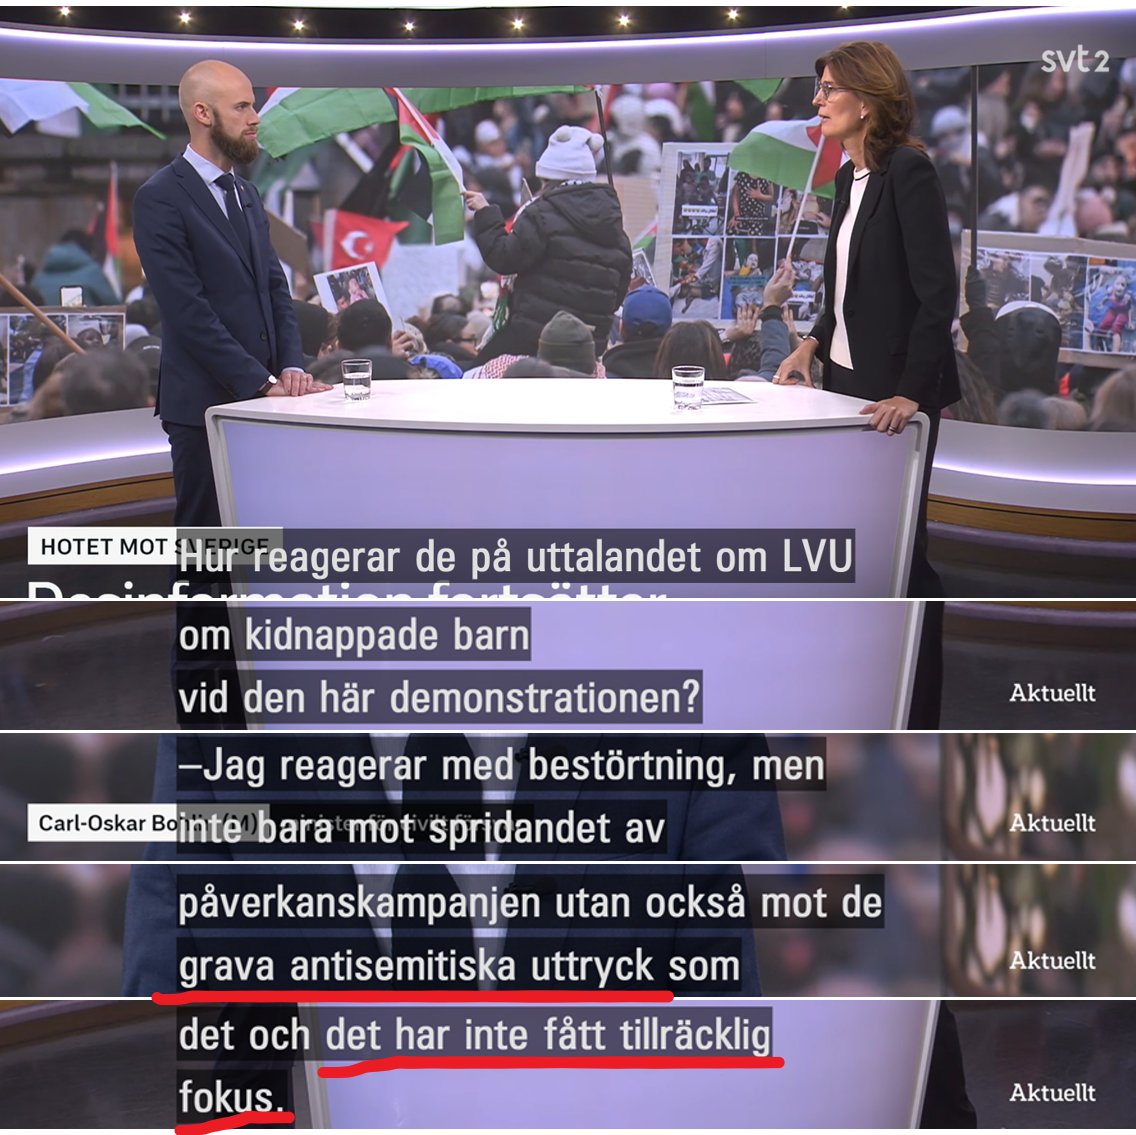 Minister Carl-Oskar Bohlin uppmärksammar @svtnyheter på den antisemitism som fritt florerar vid manifestationer, men programledaren är ointresserad av detta och vill bara prata om LVU-lögnerna. Inte en enda följdfråga om den antisemitiska hatretorik som trappas upp i Sverige.